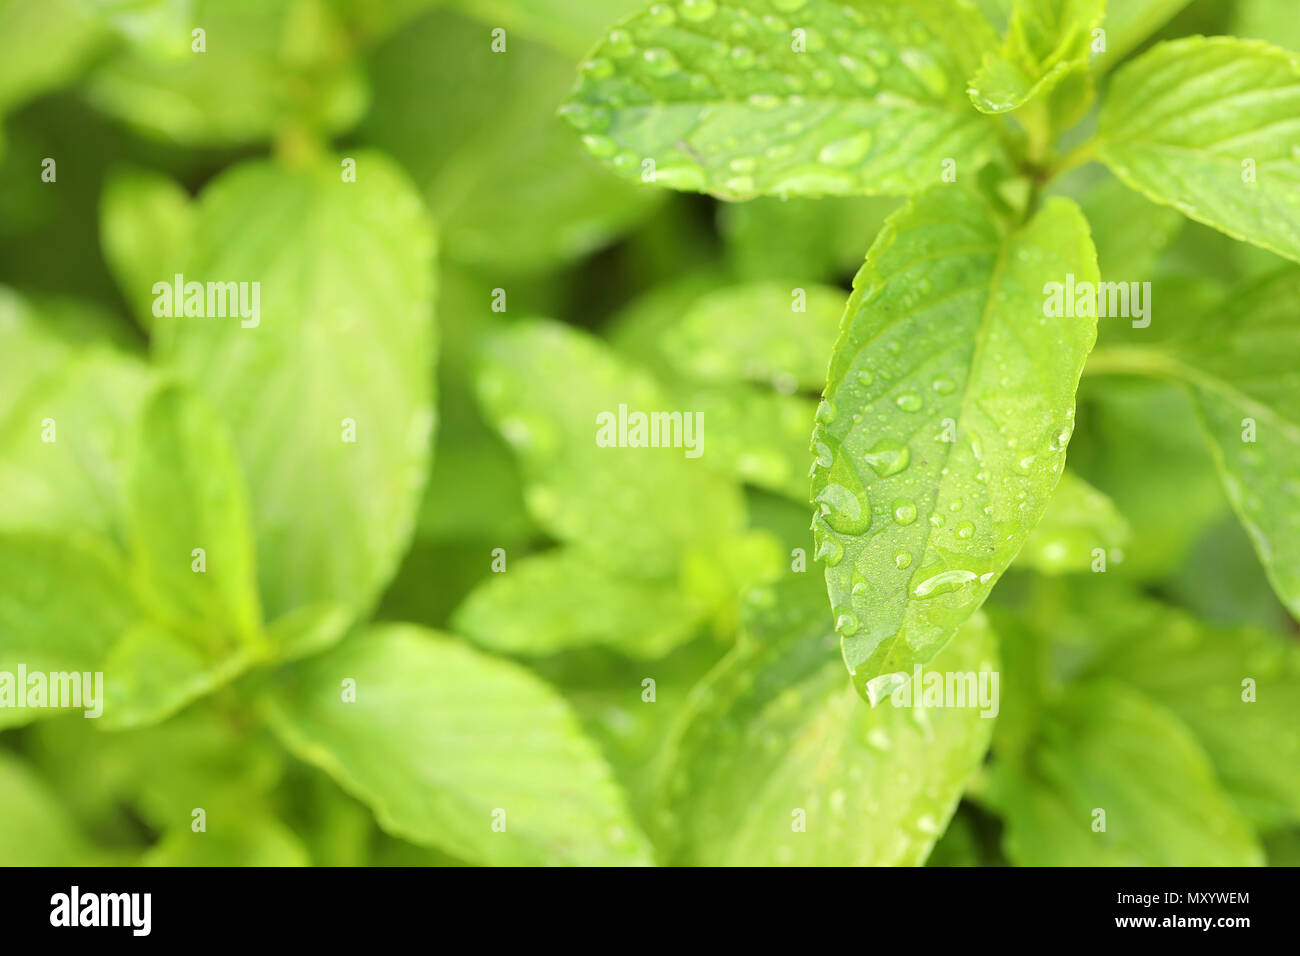 Close up image of perenial basil herb herbal plant. Le mode de vie sain ingrédient pour la cuisson. Basilic vietnamien. plante jardinage maison couverte de rosée humide détaillé Banque D'Images